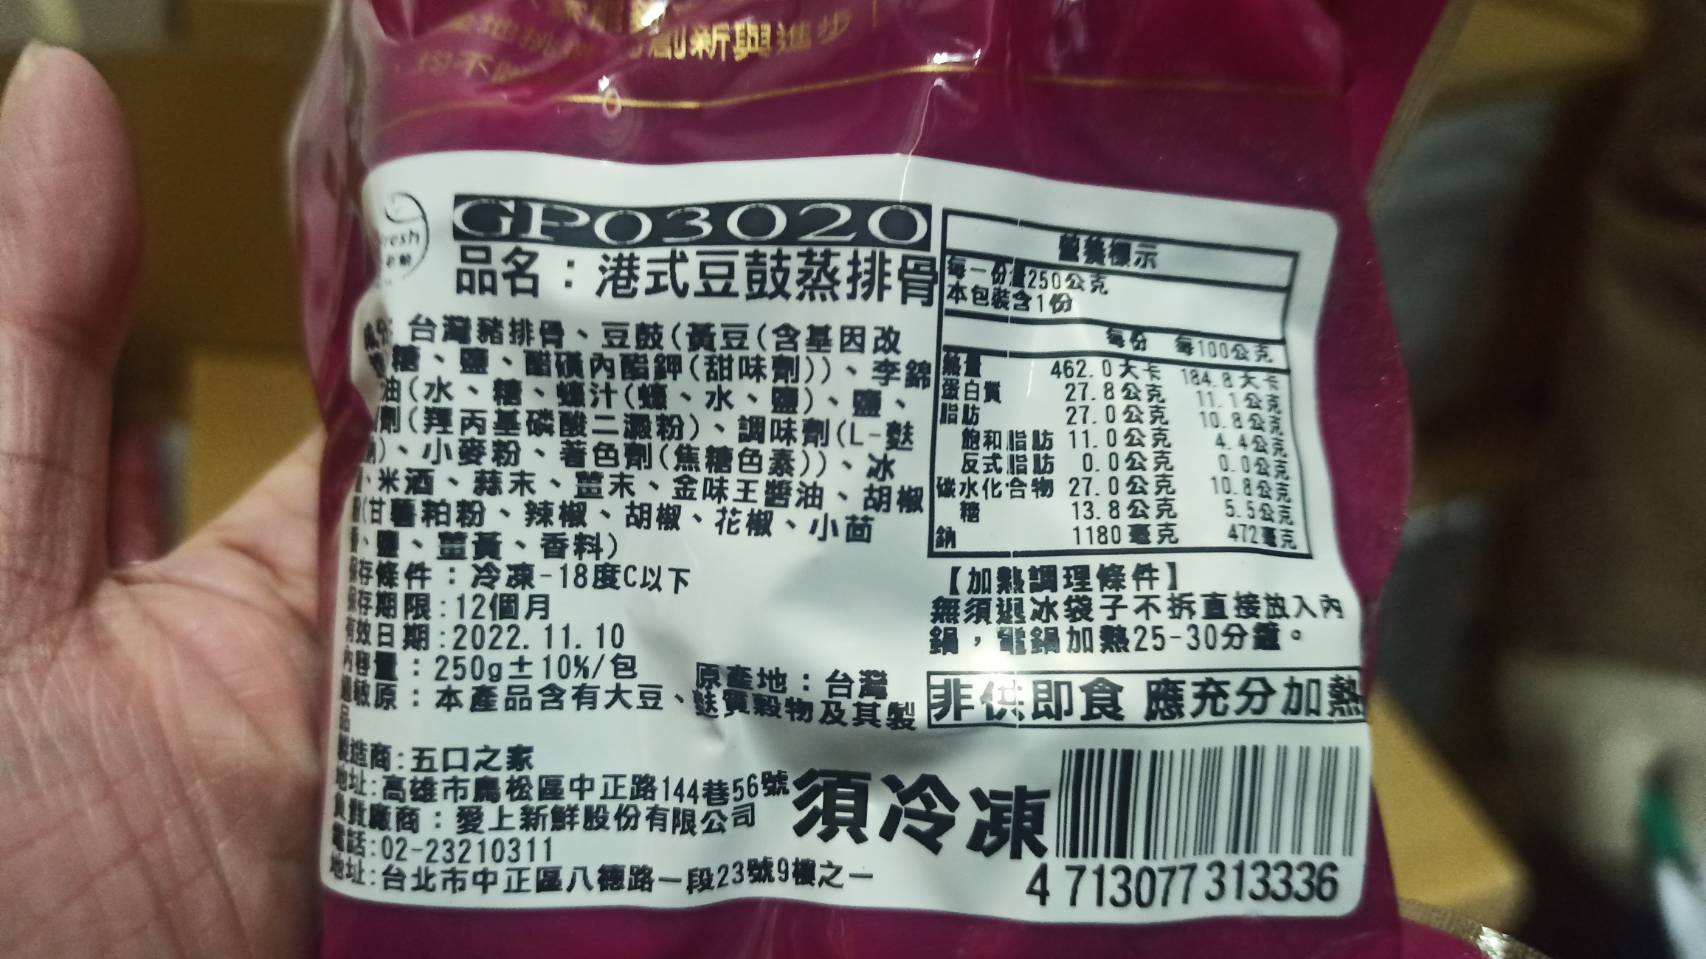       【愛上美味】秘製酒香燒豬腳6包(250g±10%/包)